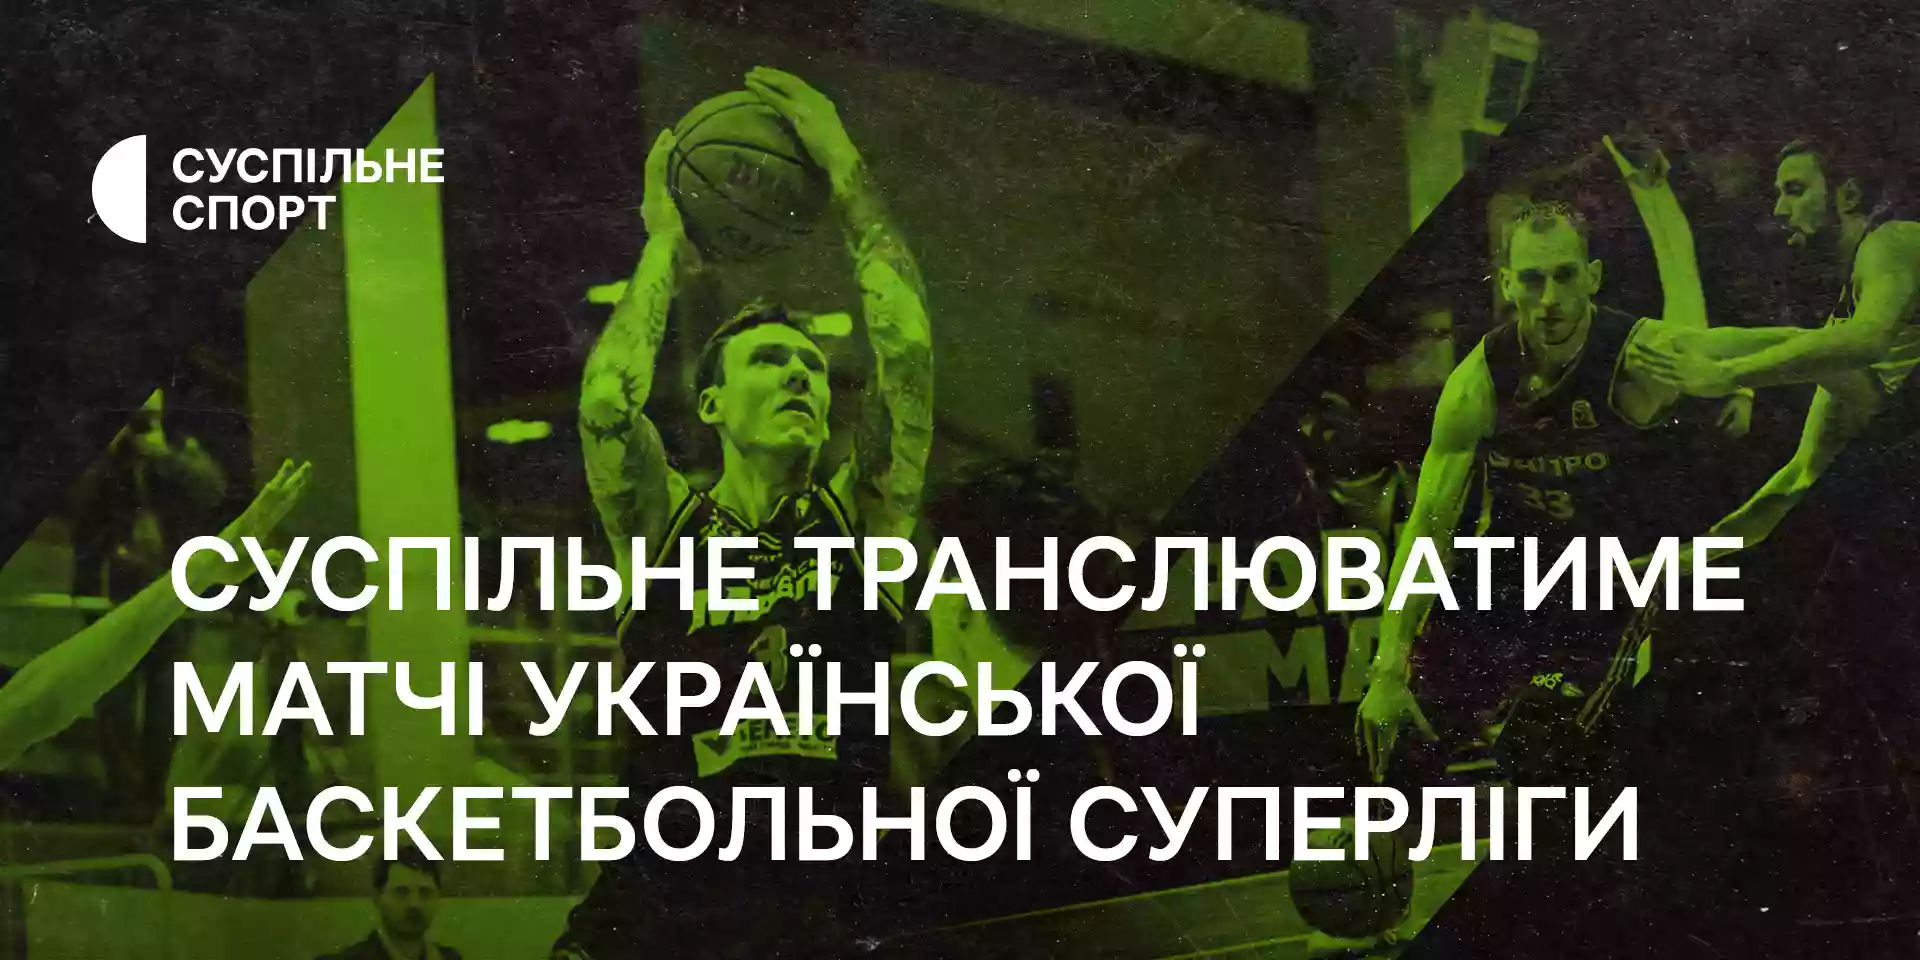 Матчі української баскетбольної суперліги дивіться на Суспільному